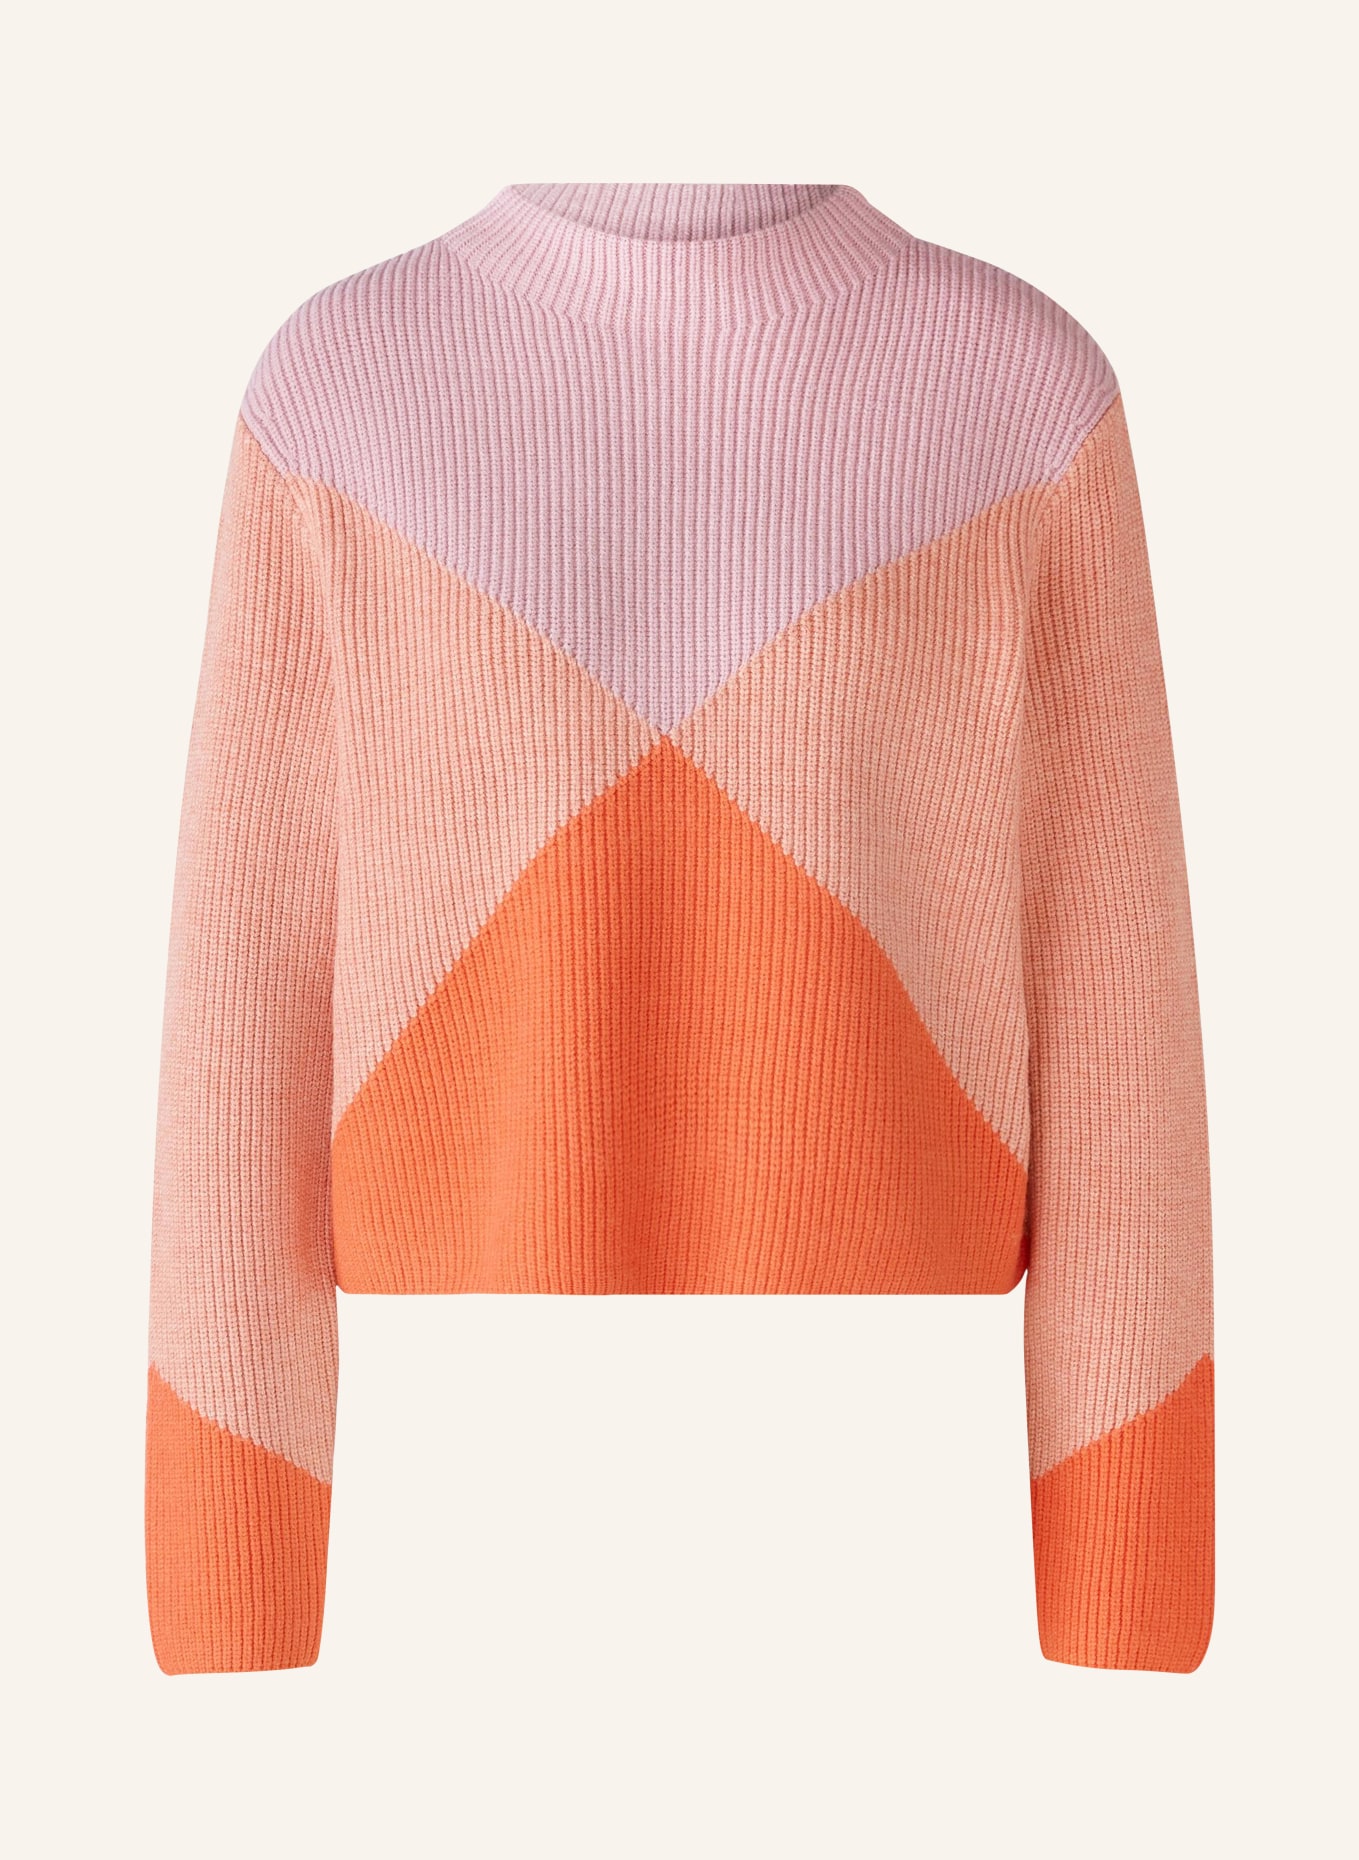 oui Sweater, Color: ORANGE/ PINK/ LIGHT ORANGE (Image 1)